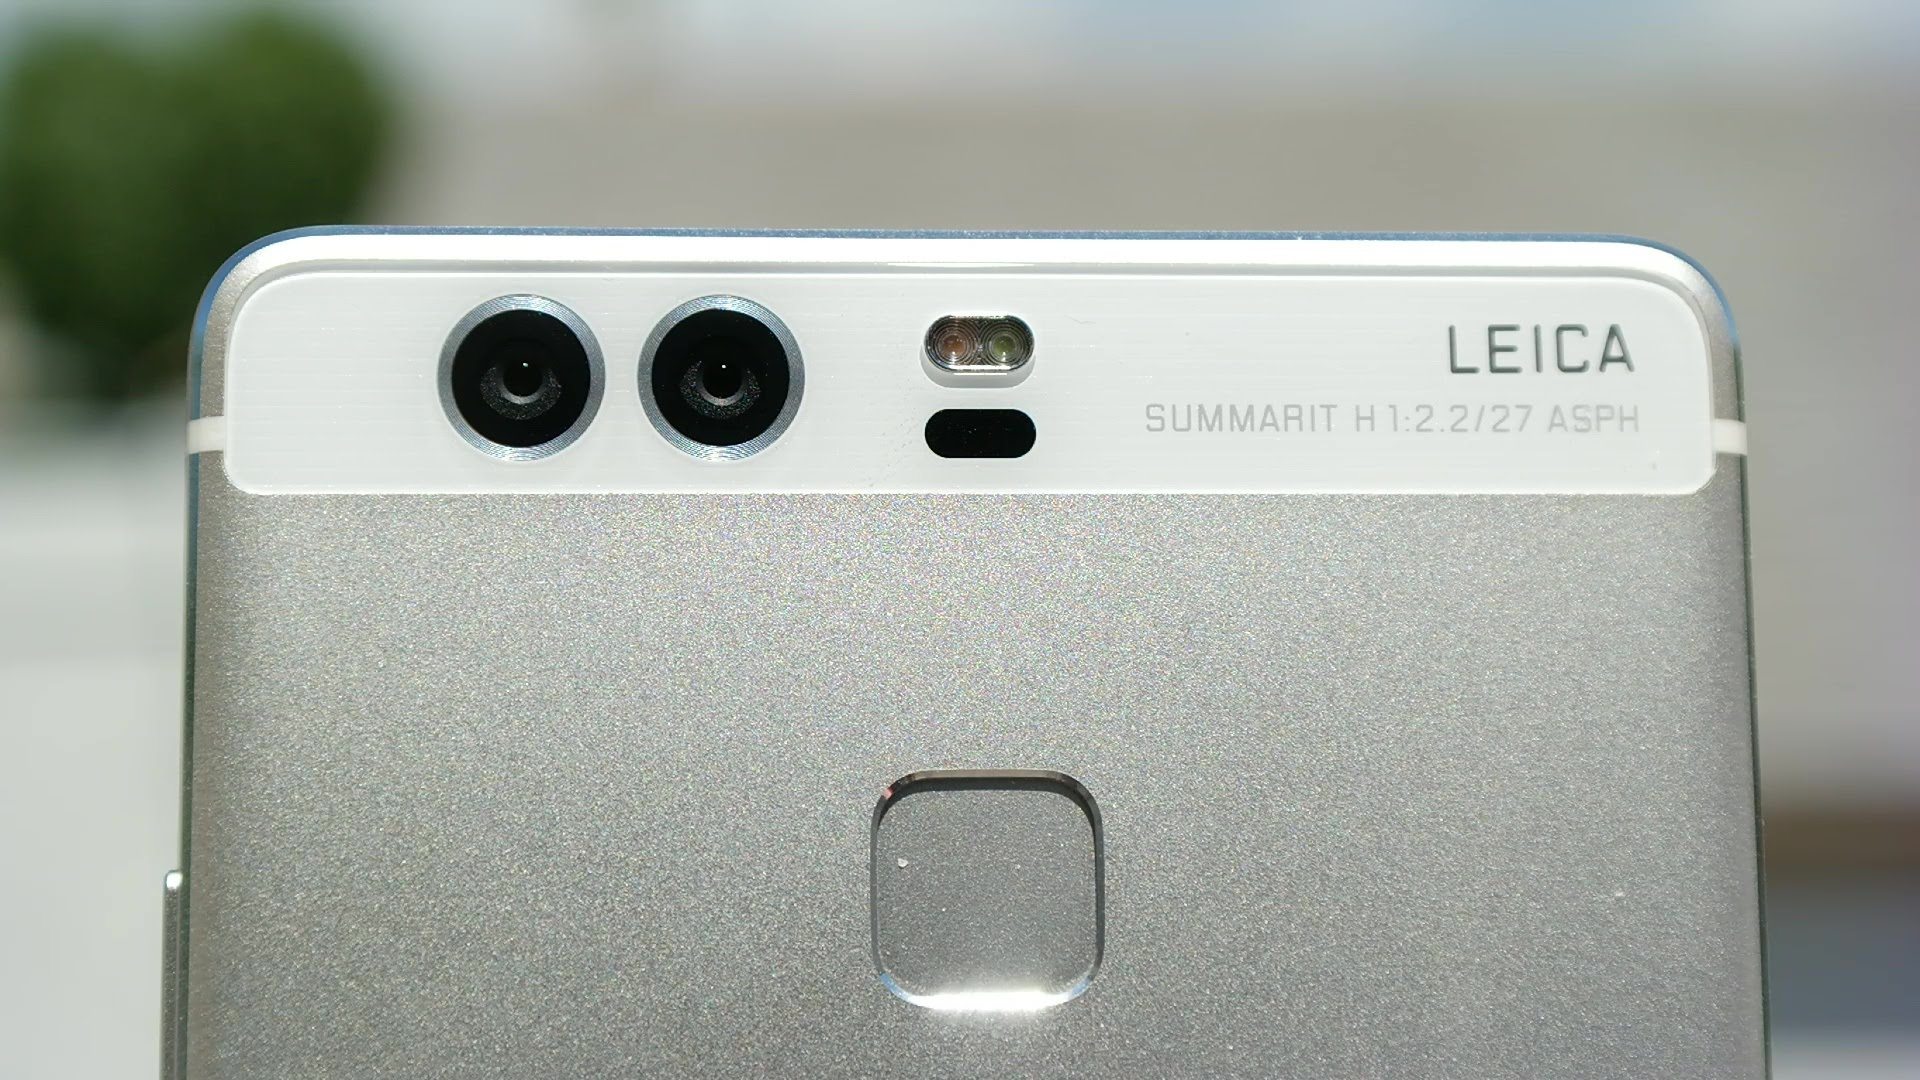 Huawei ile Leica İşbirliğinde Sona Gelindi! İpler Kopuyor